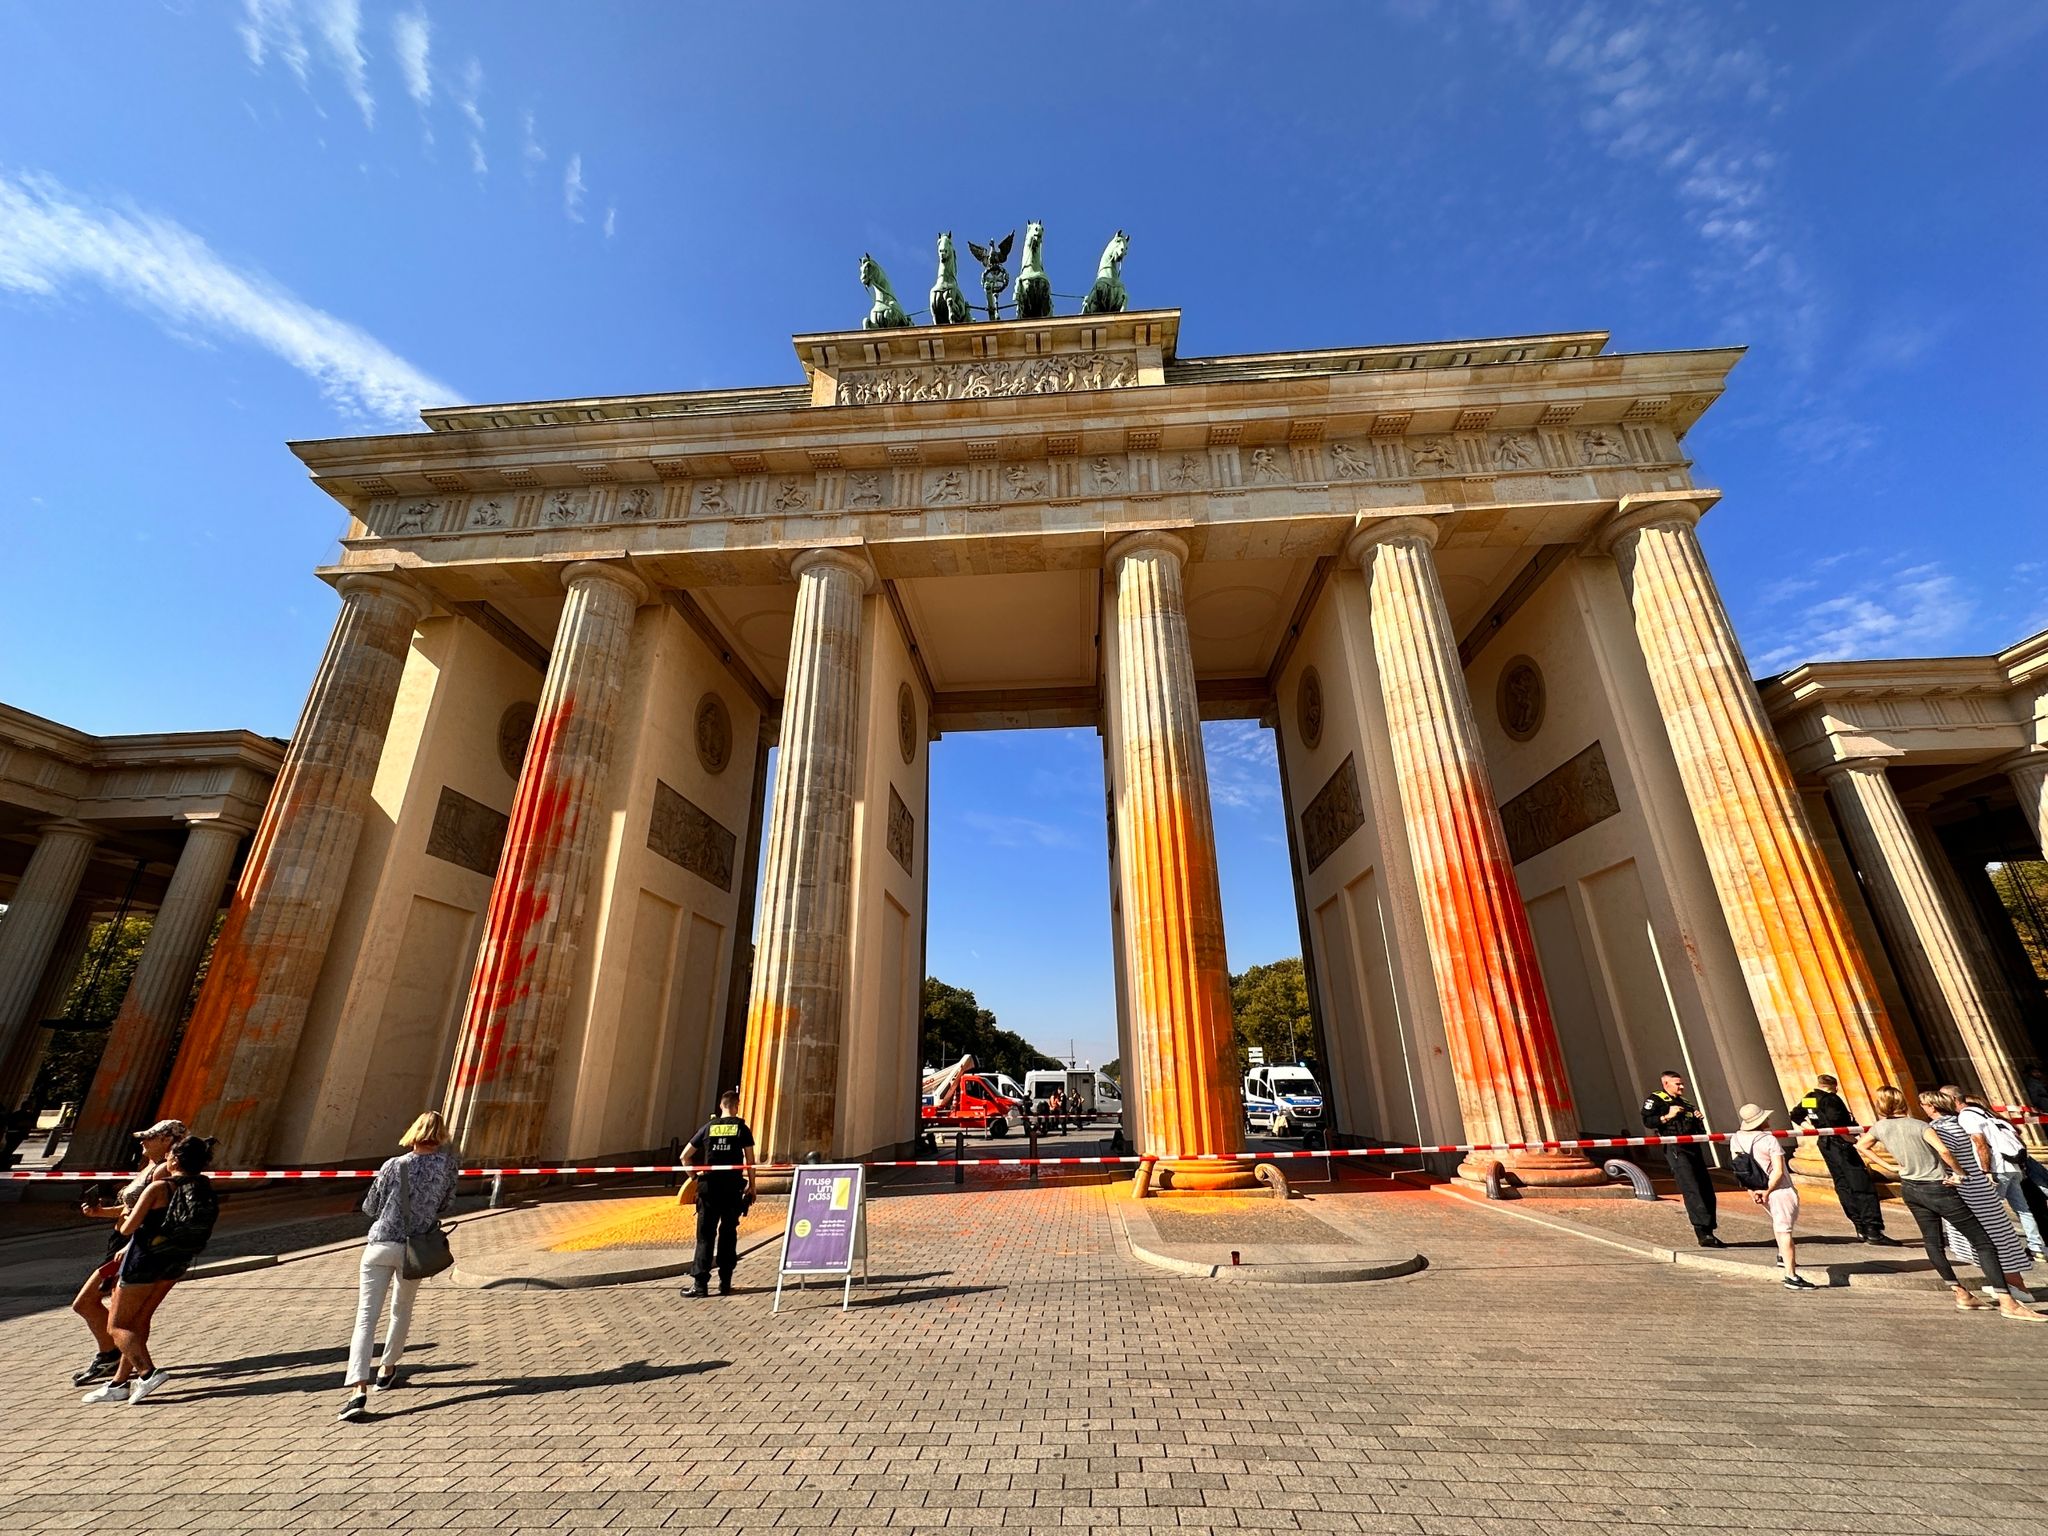 Mitglieder der Klimagruppe Letzte Generation sprühten das Brandenburger Tor im vergangenen September mit oranger Farbe an.